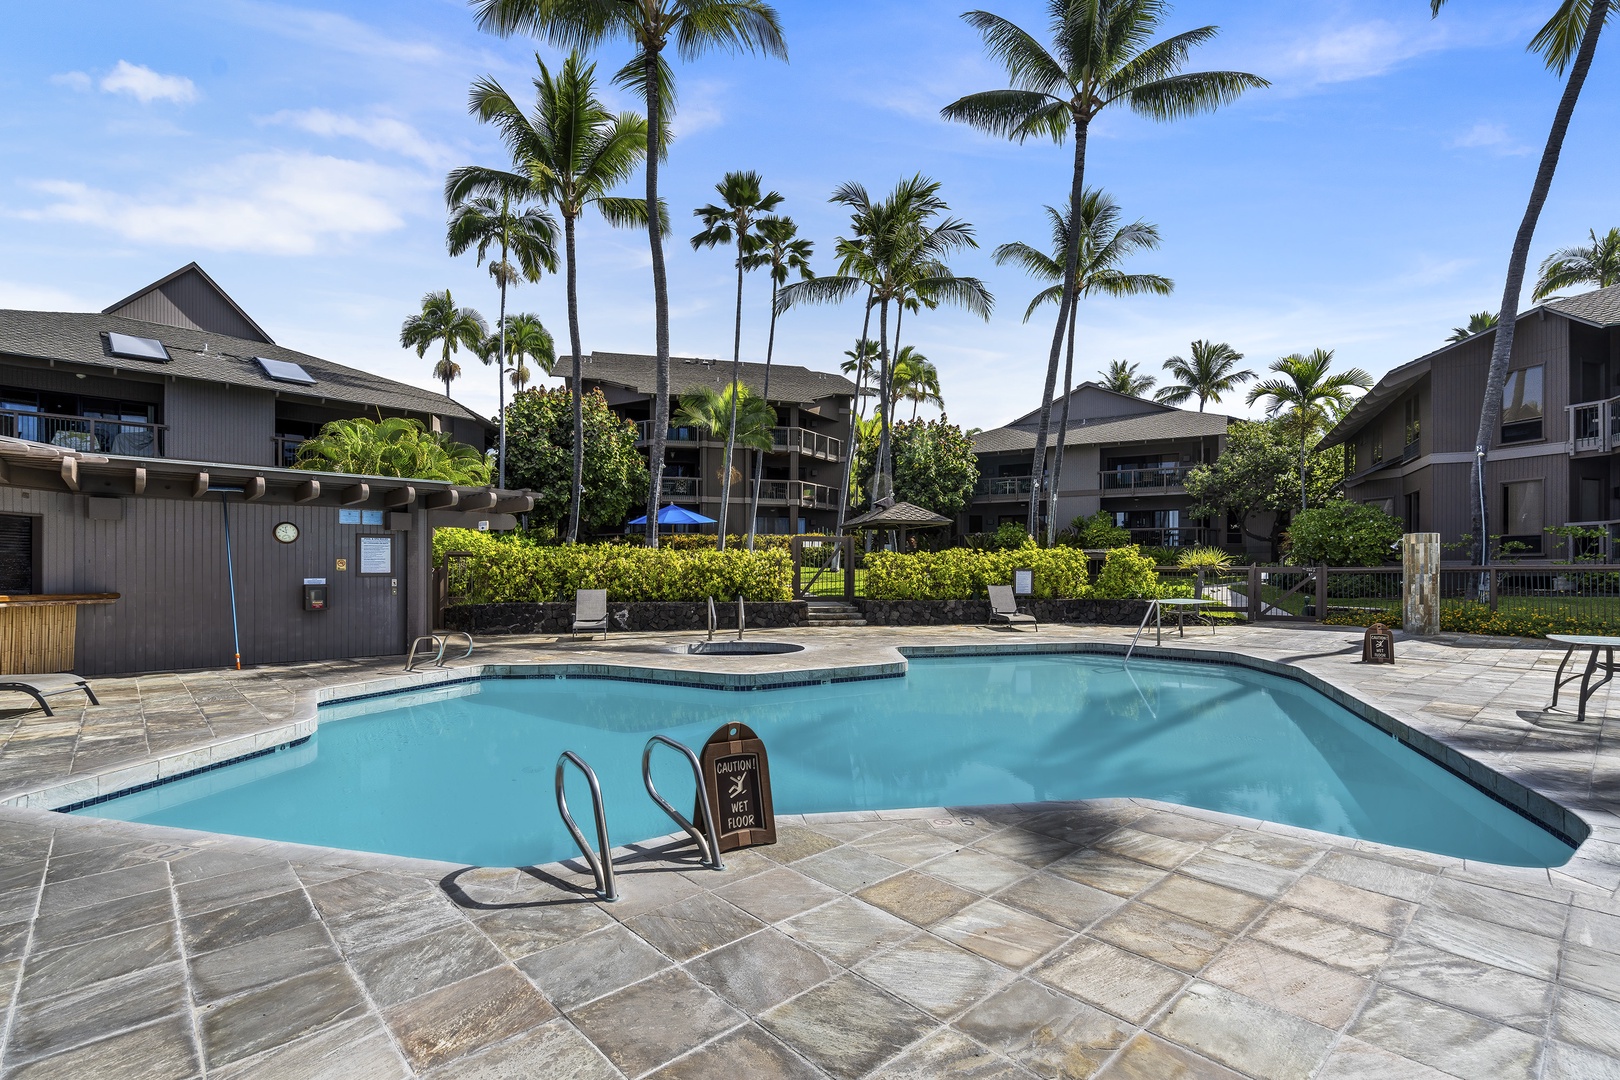 Kailua Kona Vacation Rentals, Kanaloa at Kona 1302 - Second pool at the complex!